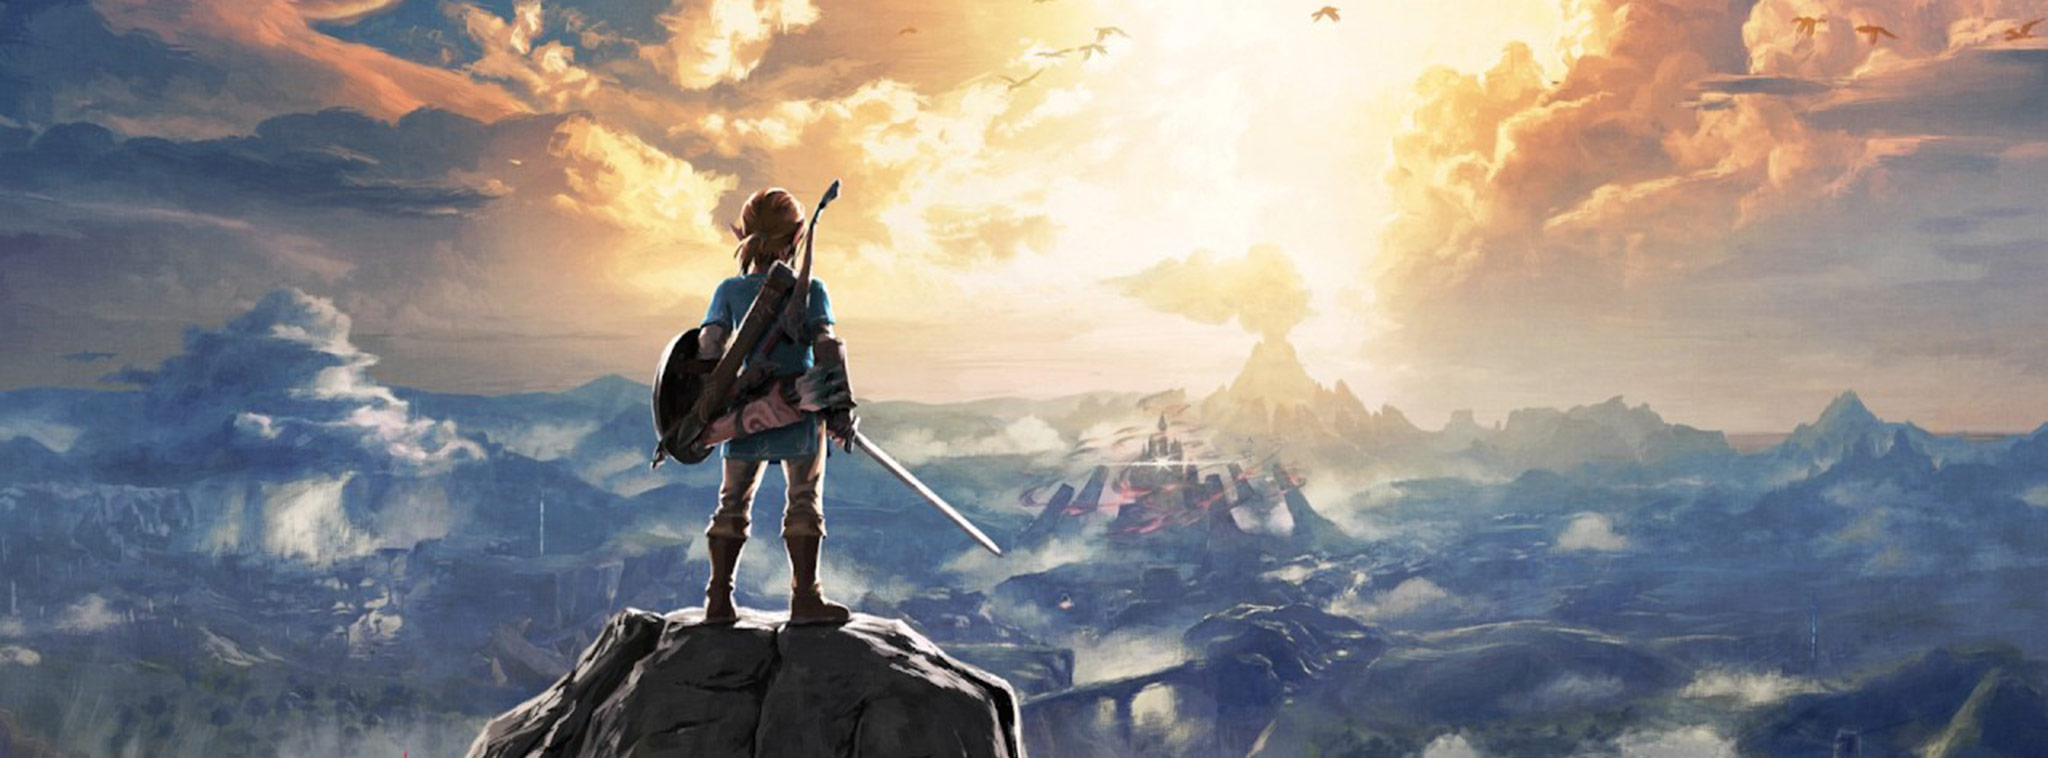 WSJ: Nintendo sẽ mang tựa game nổi tiếng Legend of Zelda lên smartphone trong năm nay